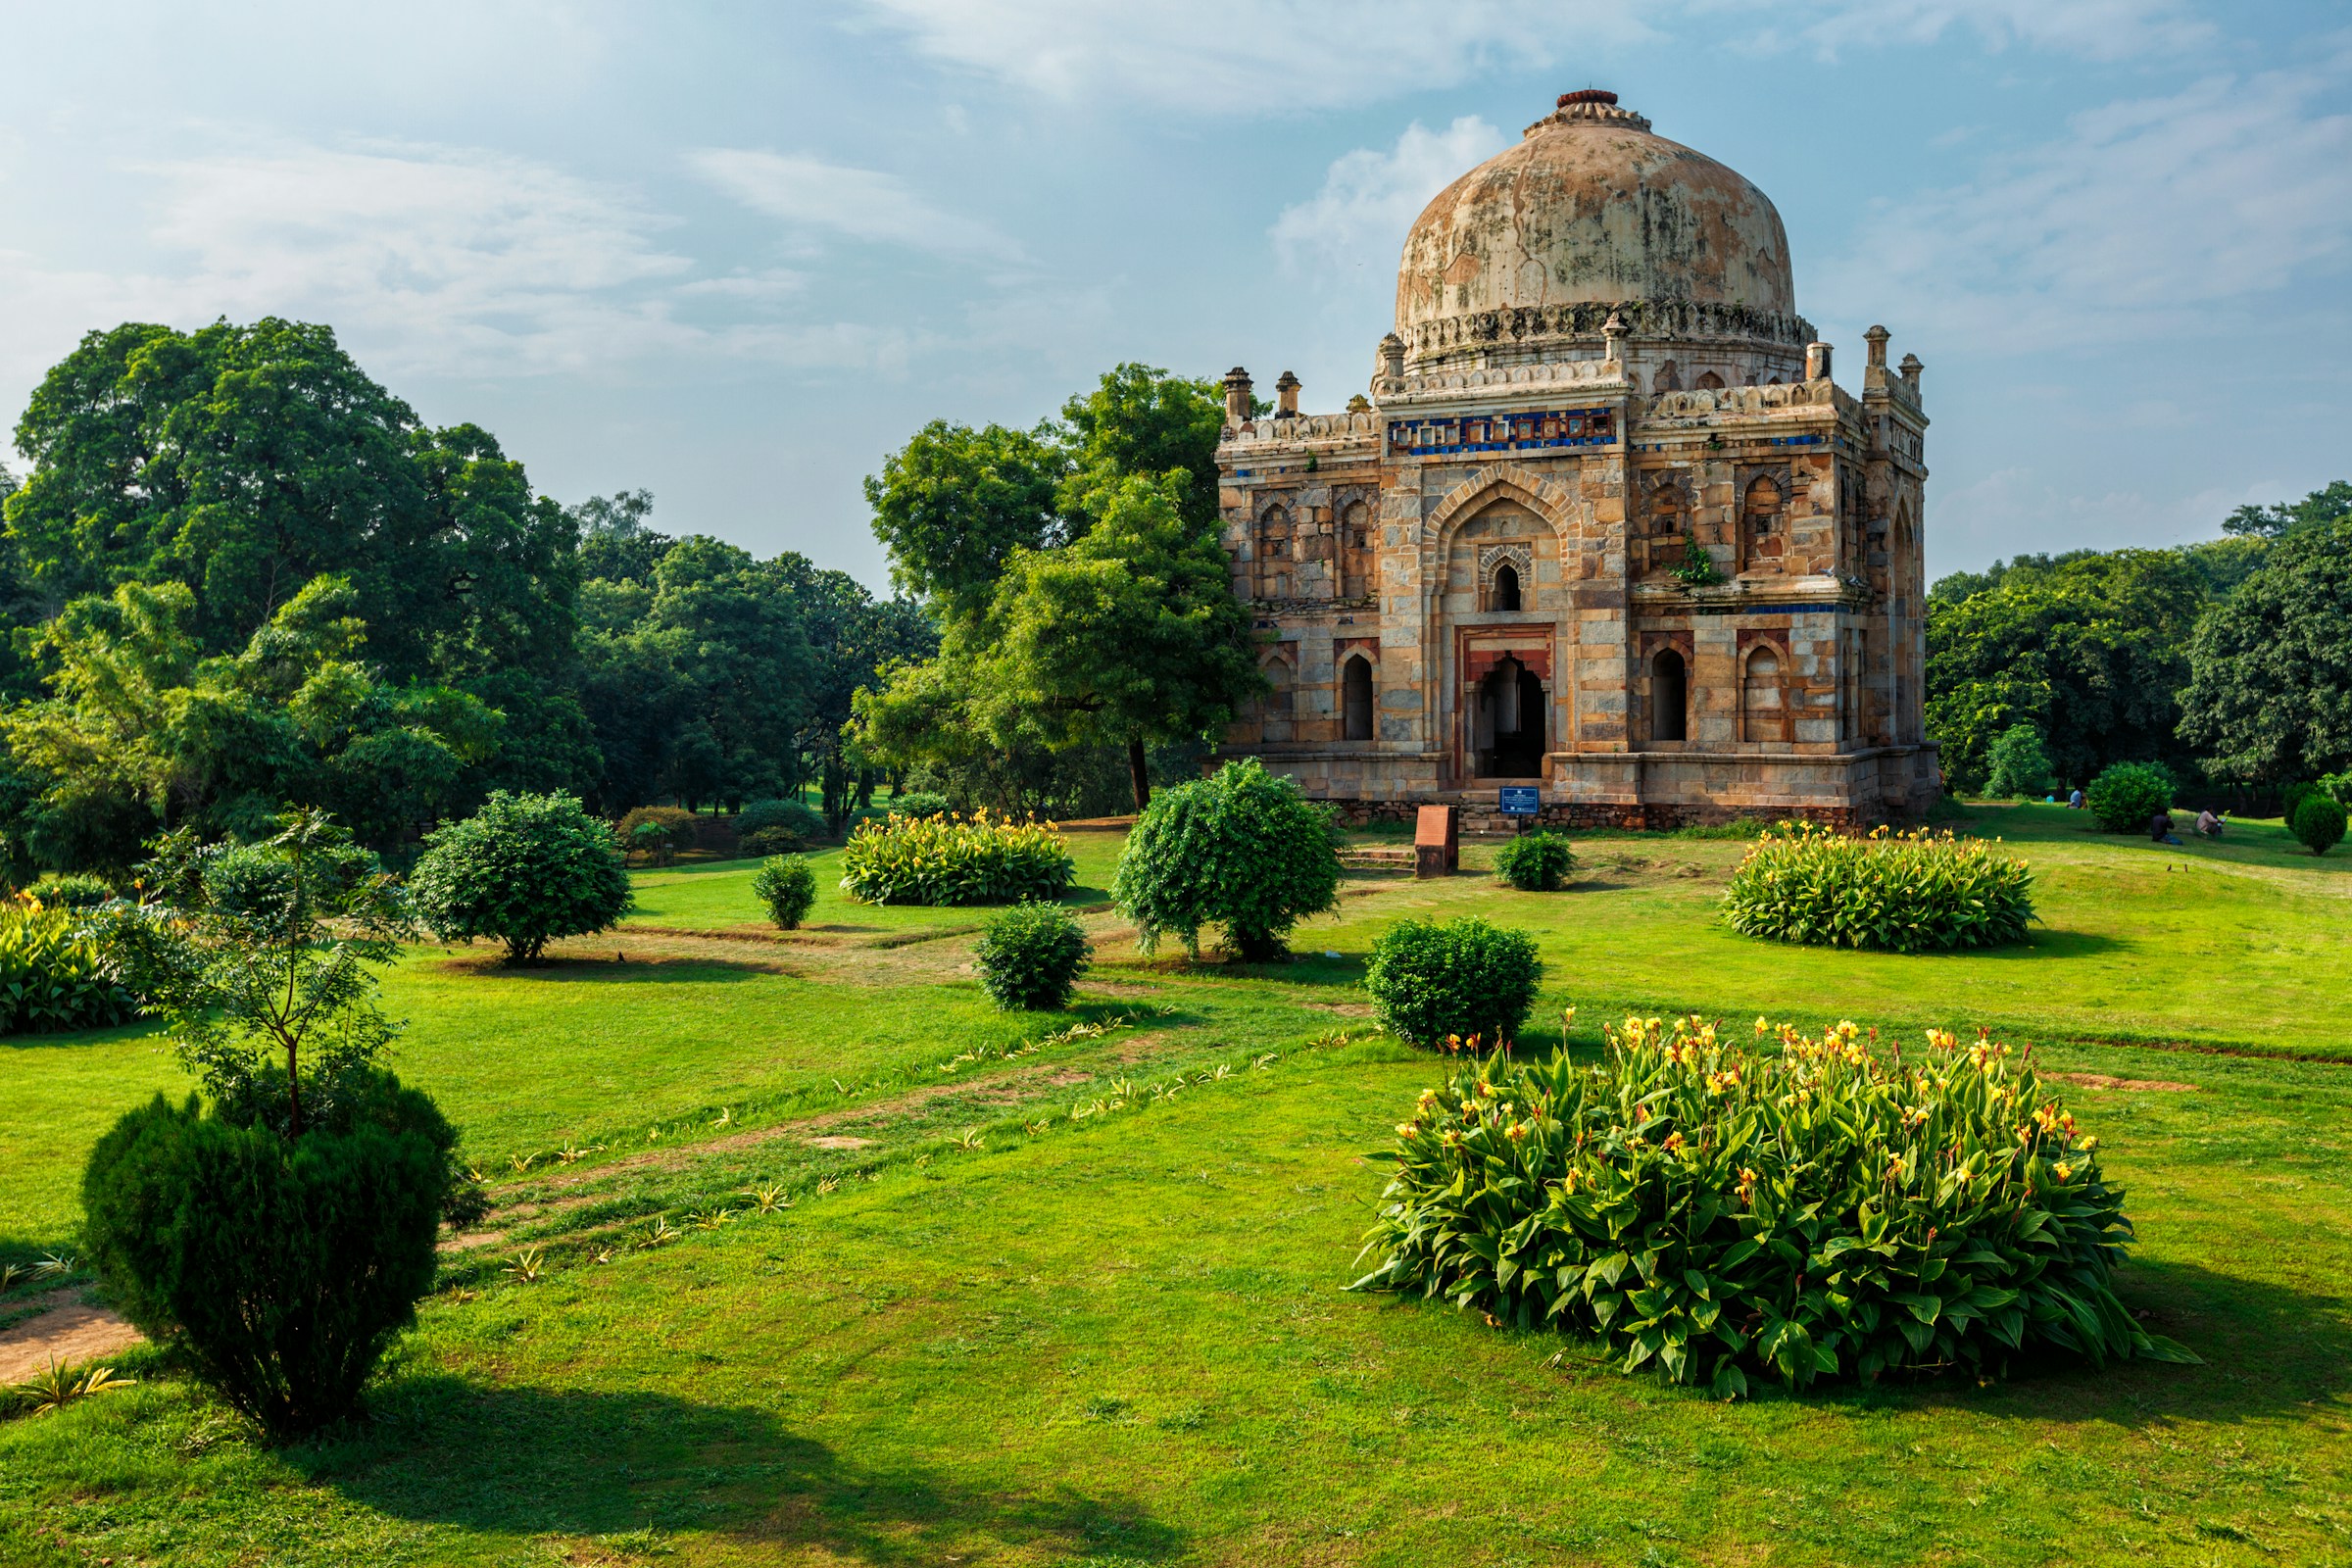 Gammalt historiskt mausoleum omgivet av gröna trädgårdar och växtlighet under solig himmel i Indien.